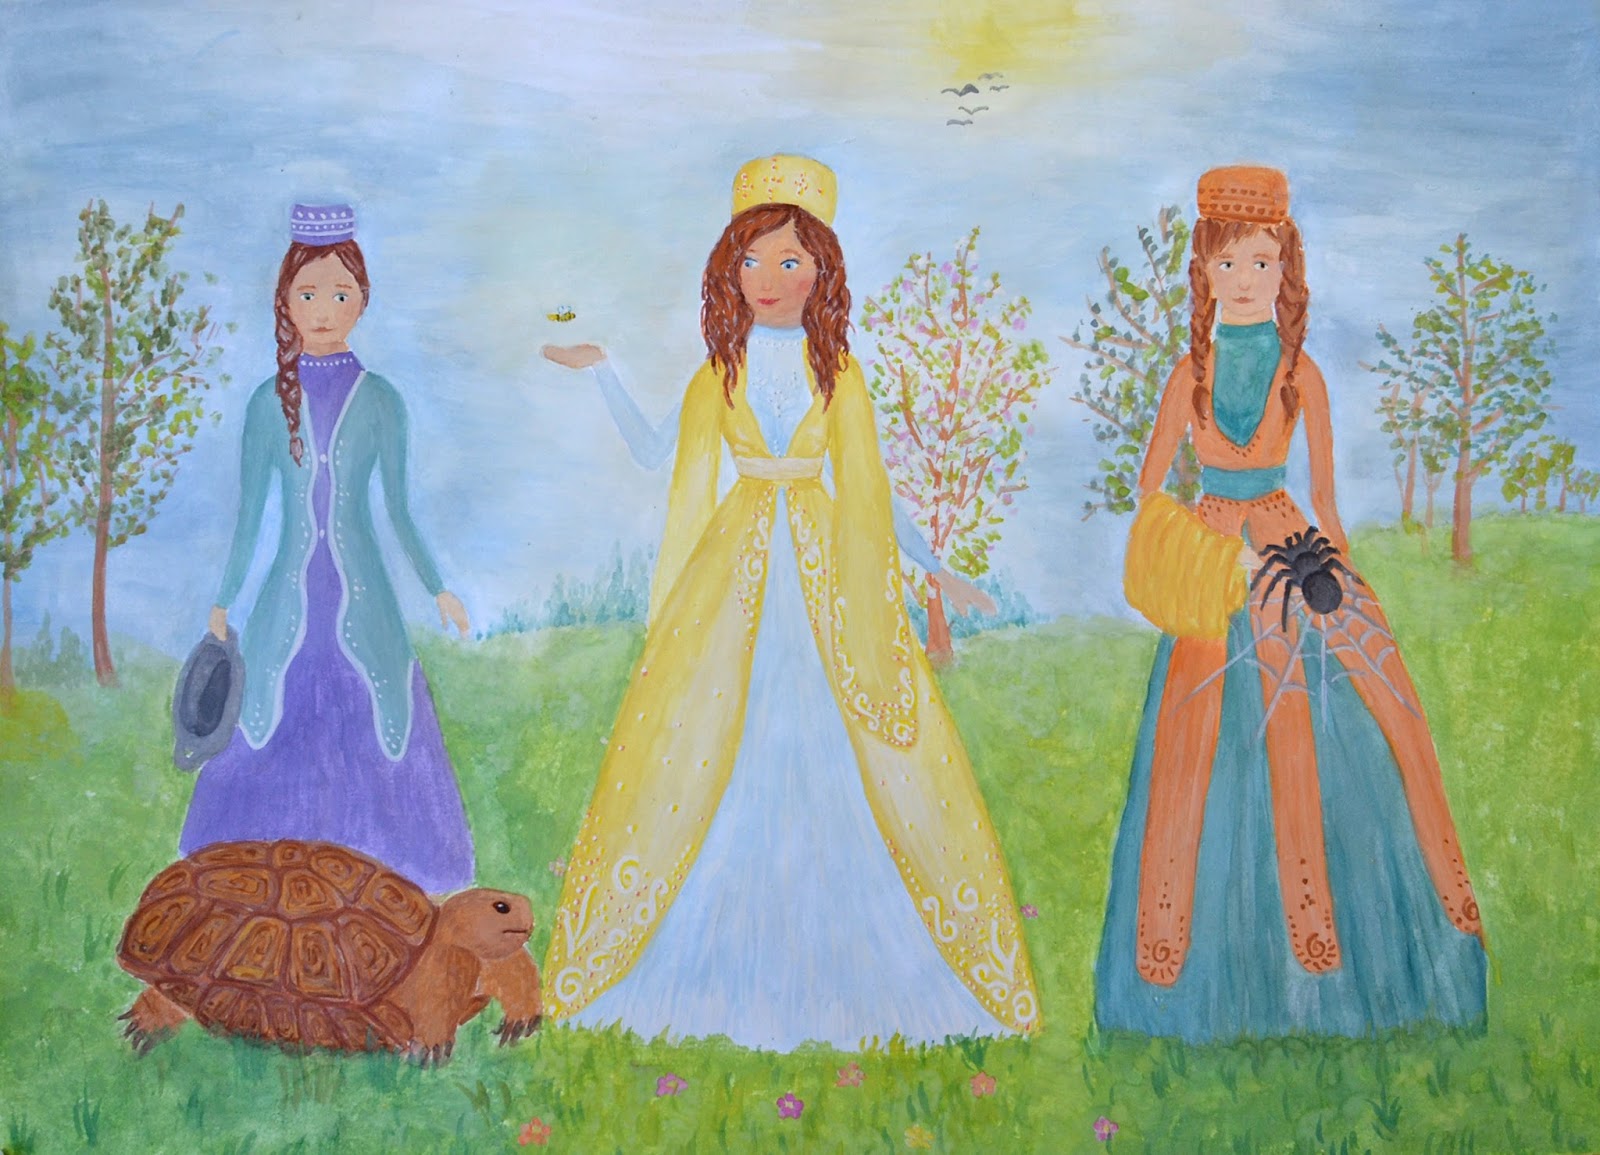 Рисунки 3 сестры. Три дочери. Три дочери Татарская народная сказка иллюстрации. Три дочери рисунок. УДМУРТКА иллюстрация для детей.